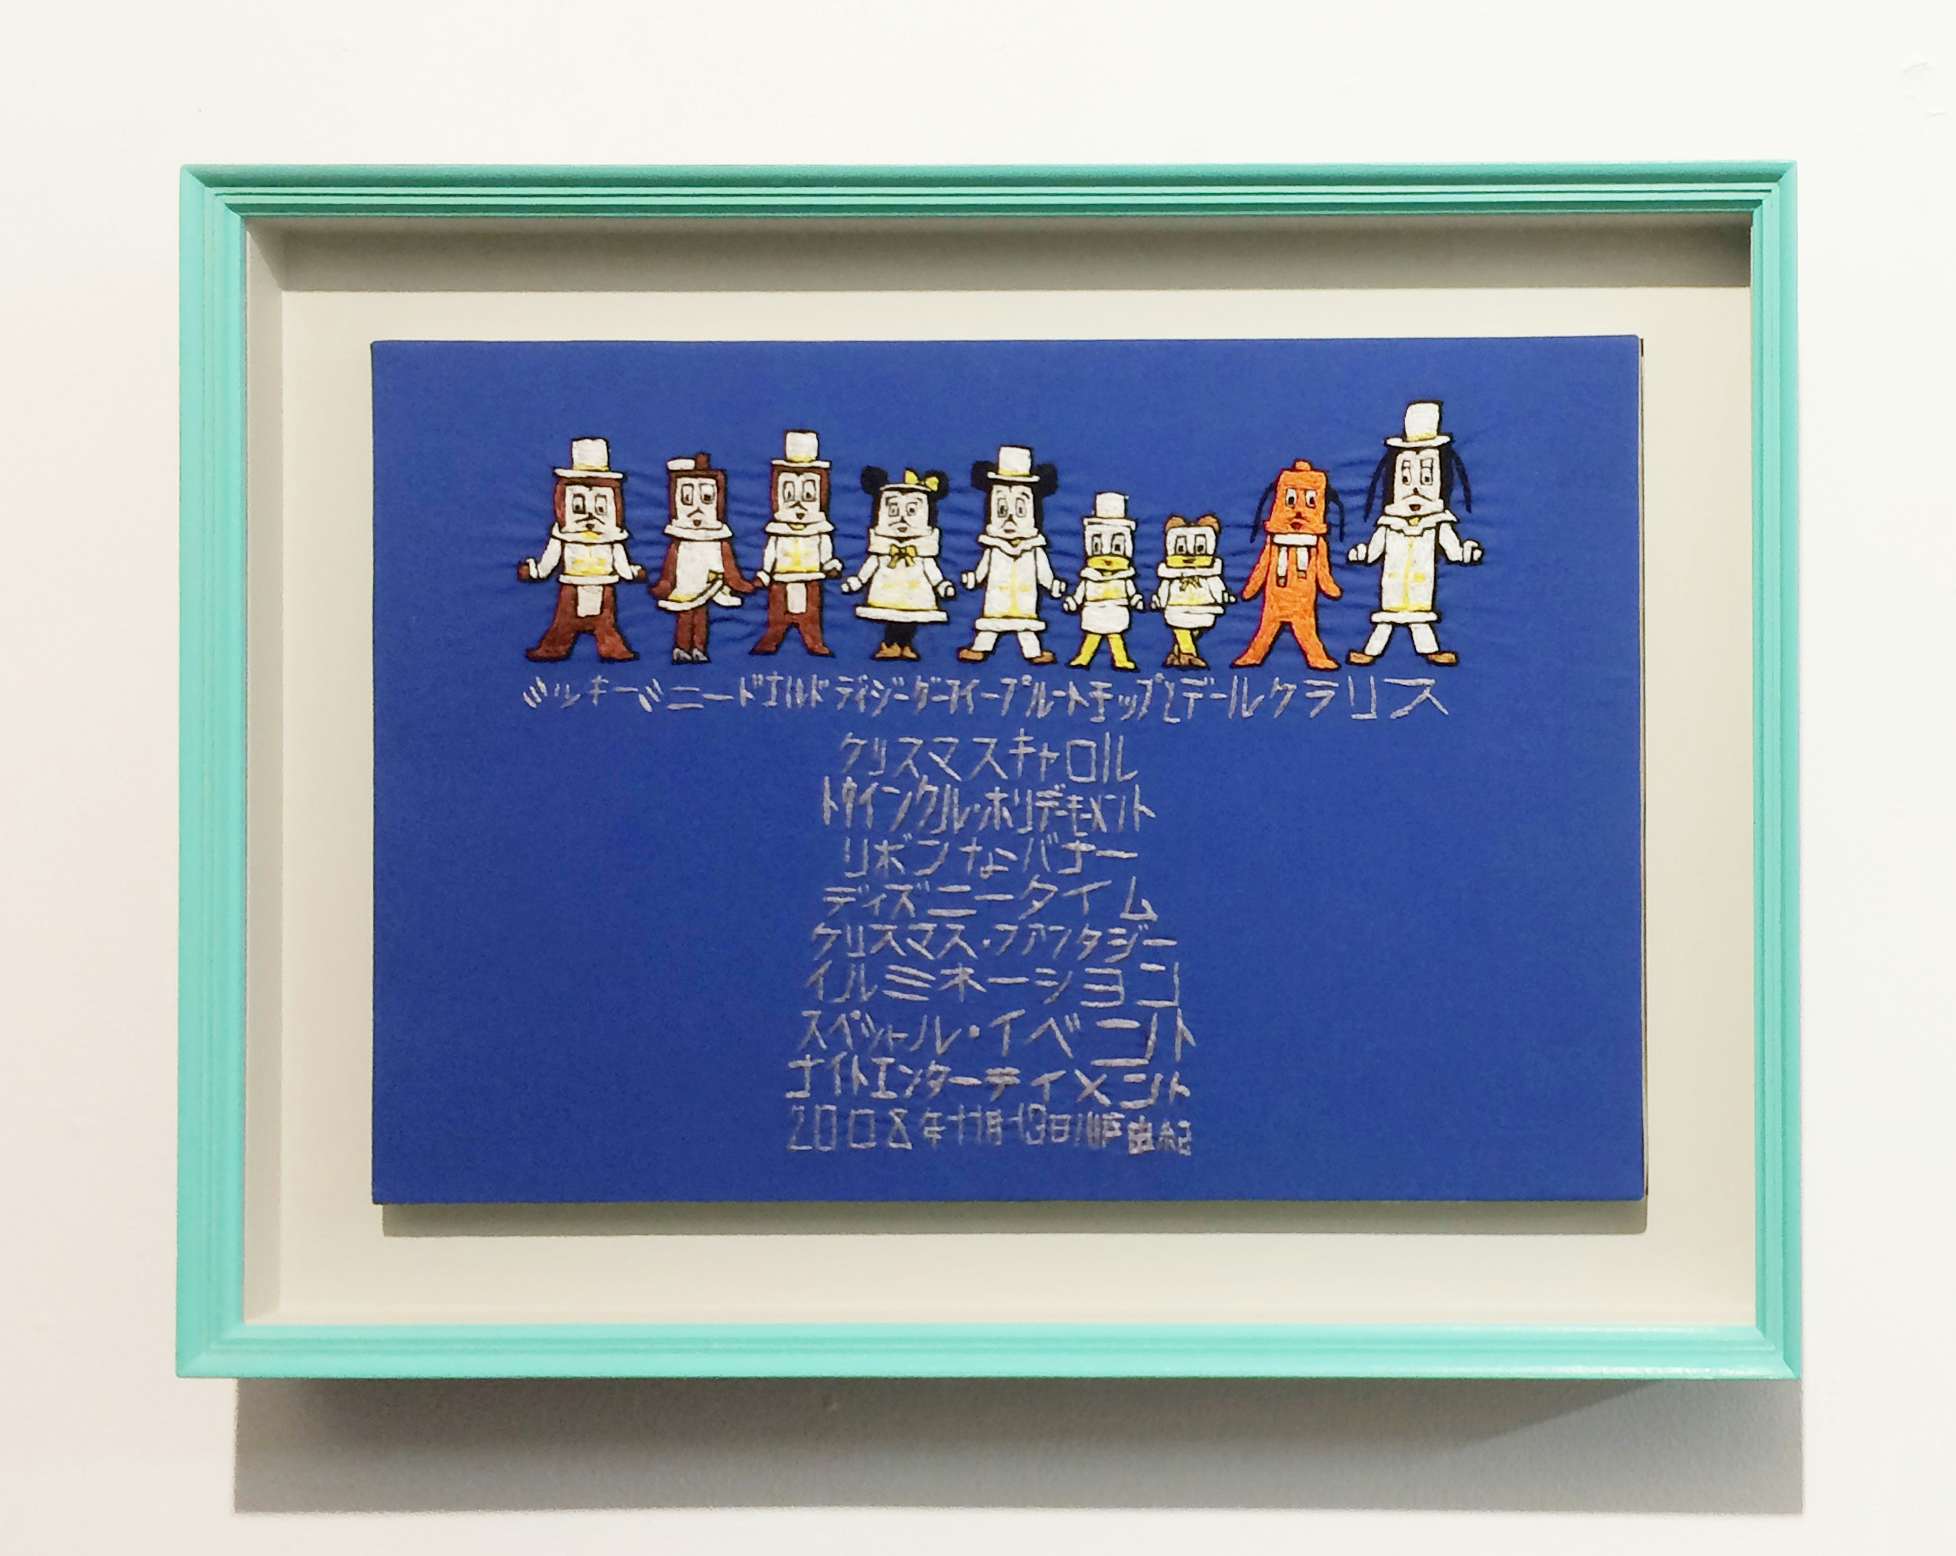 アメリカのネズミ風のキャラクター を刺繍で再現 川戸由紀が個展開催 画像ギャラリー 2 2 美術手帖